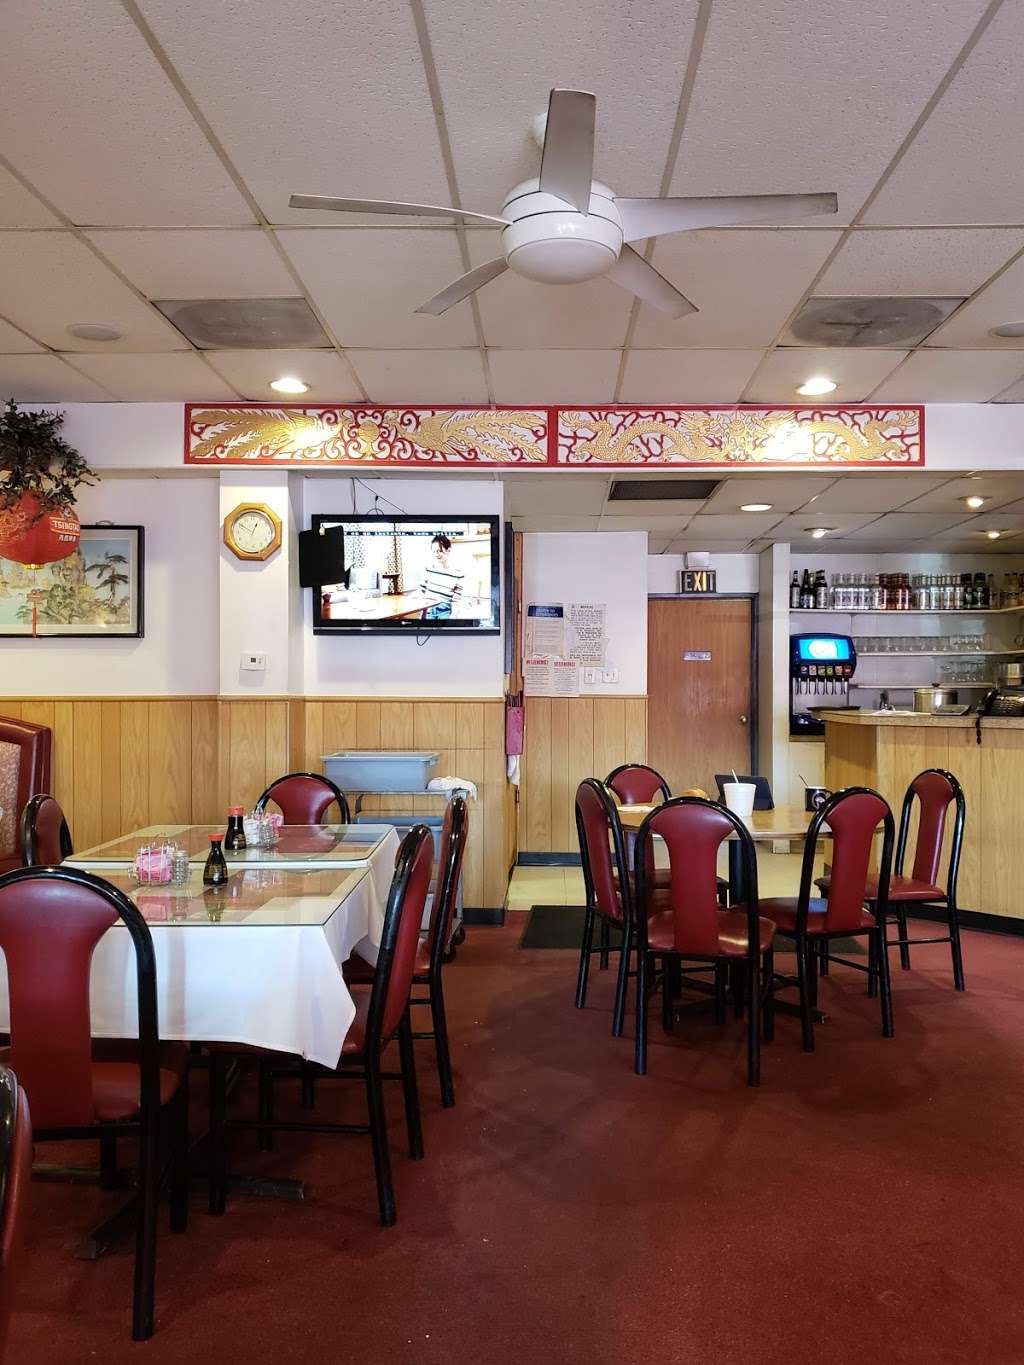 Chans Inn Chinese Restaurant | 3985 E 120th Ave, Thornton, CO 80233 | Phone: (303) 457-8010